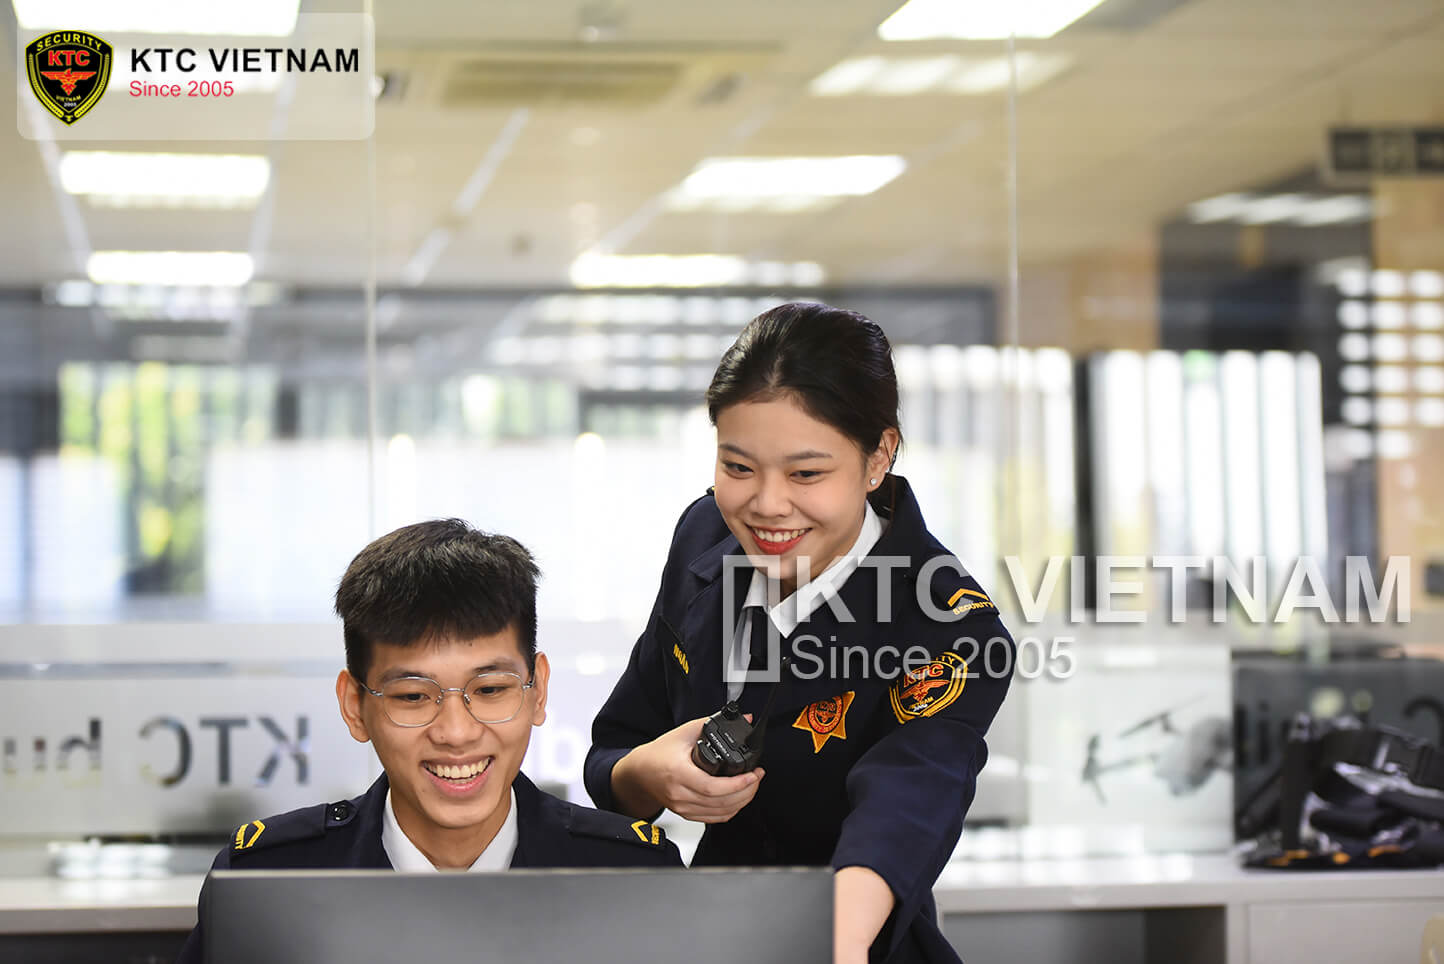 KTC Vietnam’s Management Model